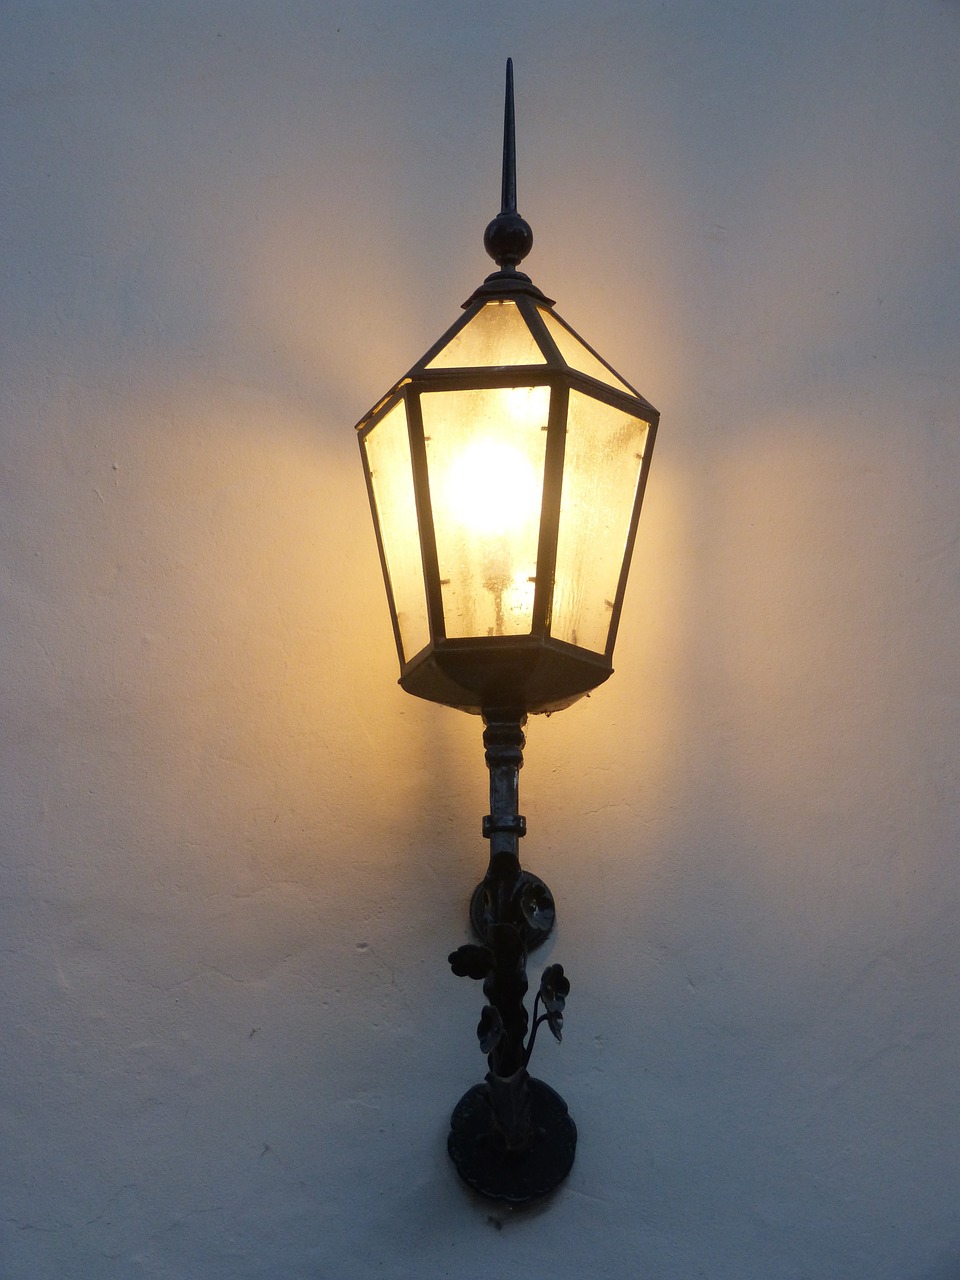 lamppost lit illumination free photo